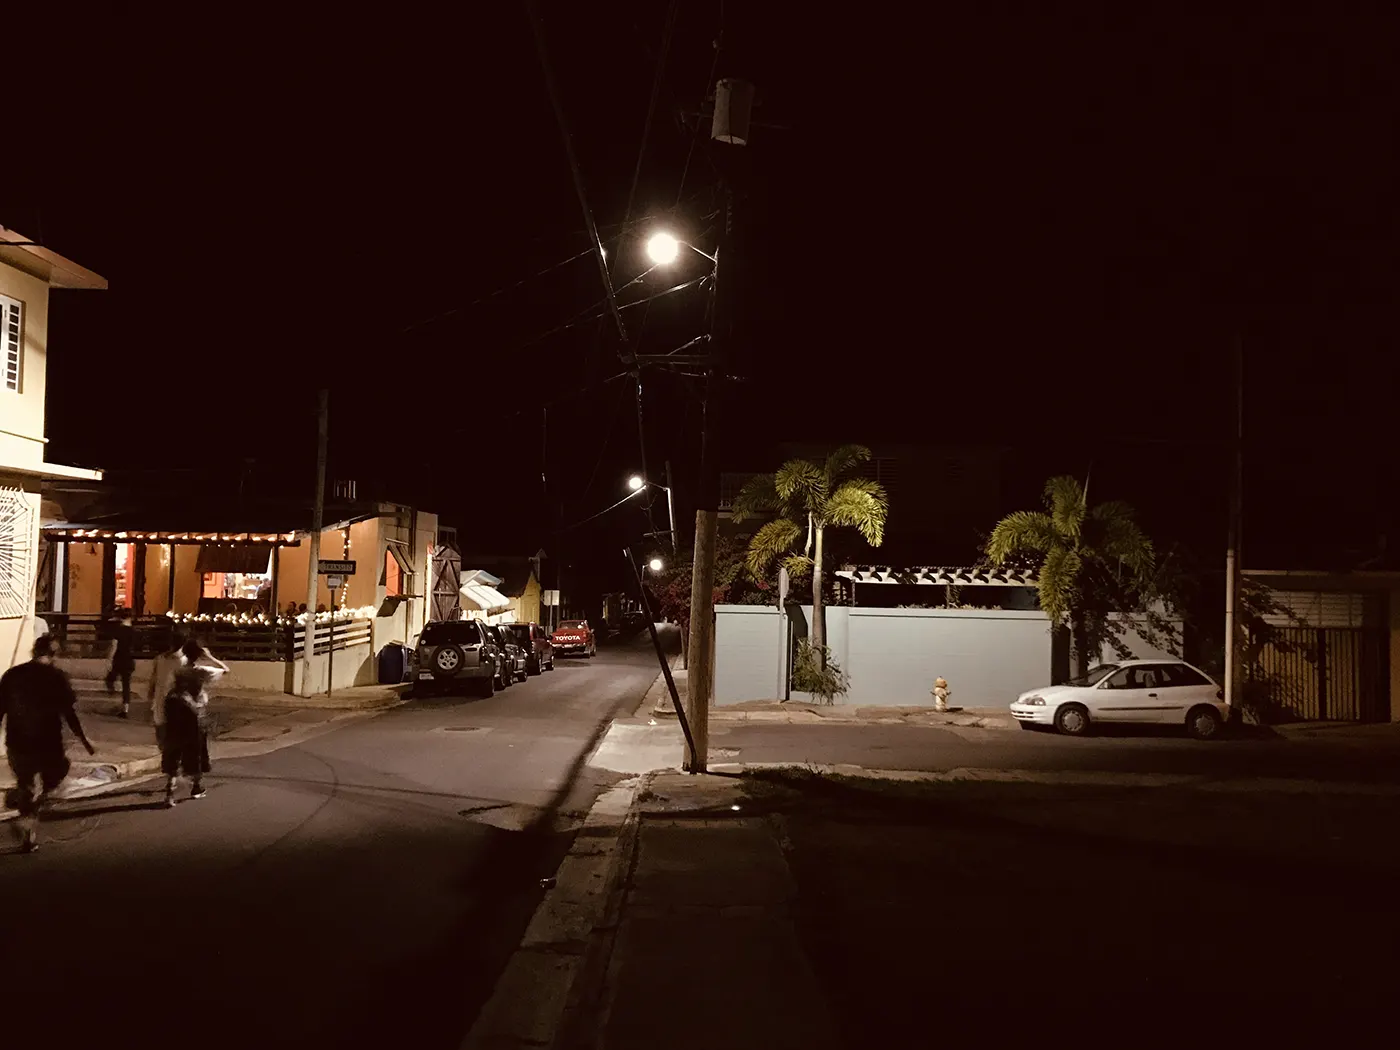 Vieques di notte, foto di Roberta Da Soller, dicembre 2018.